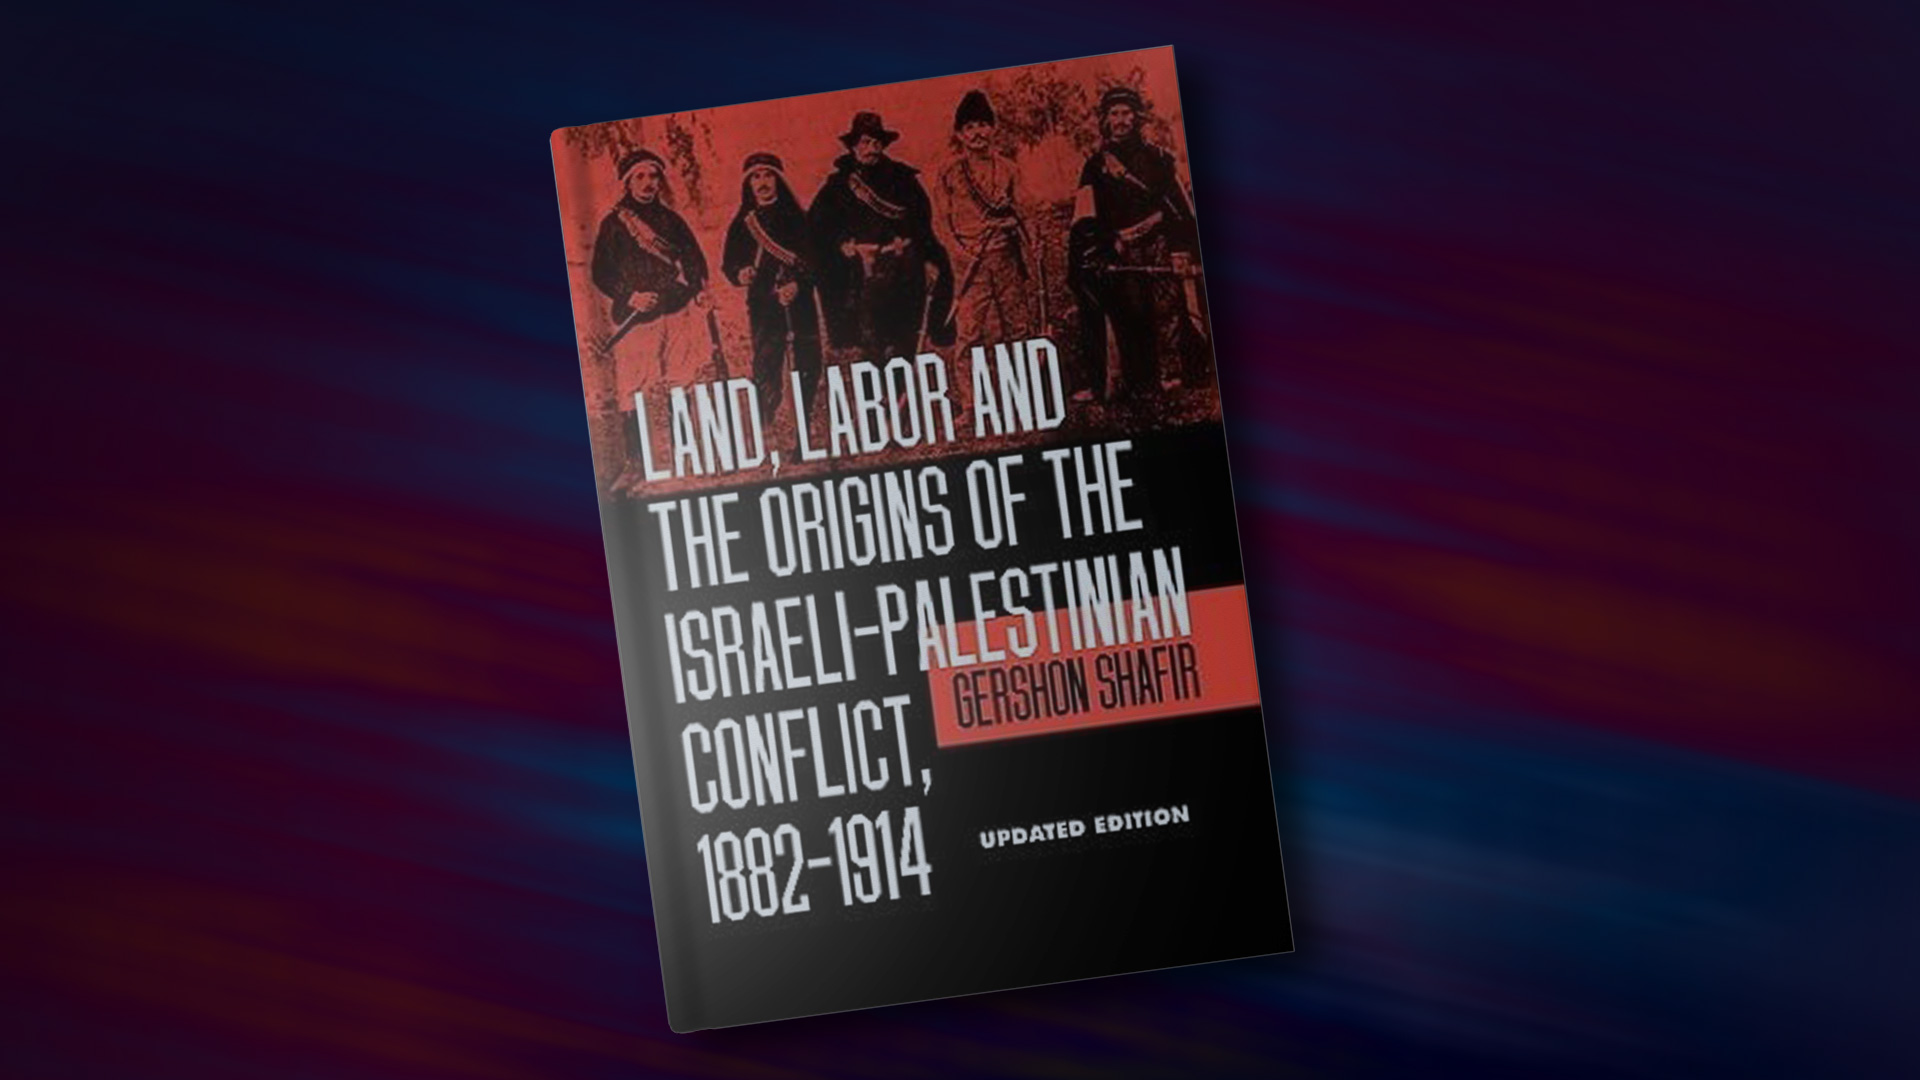 غلاف كتاب "المجتمع الإسرائيليّ: وجهات نظر انتقاديّة